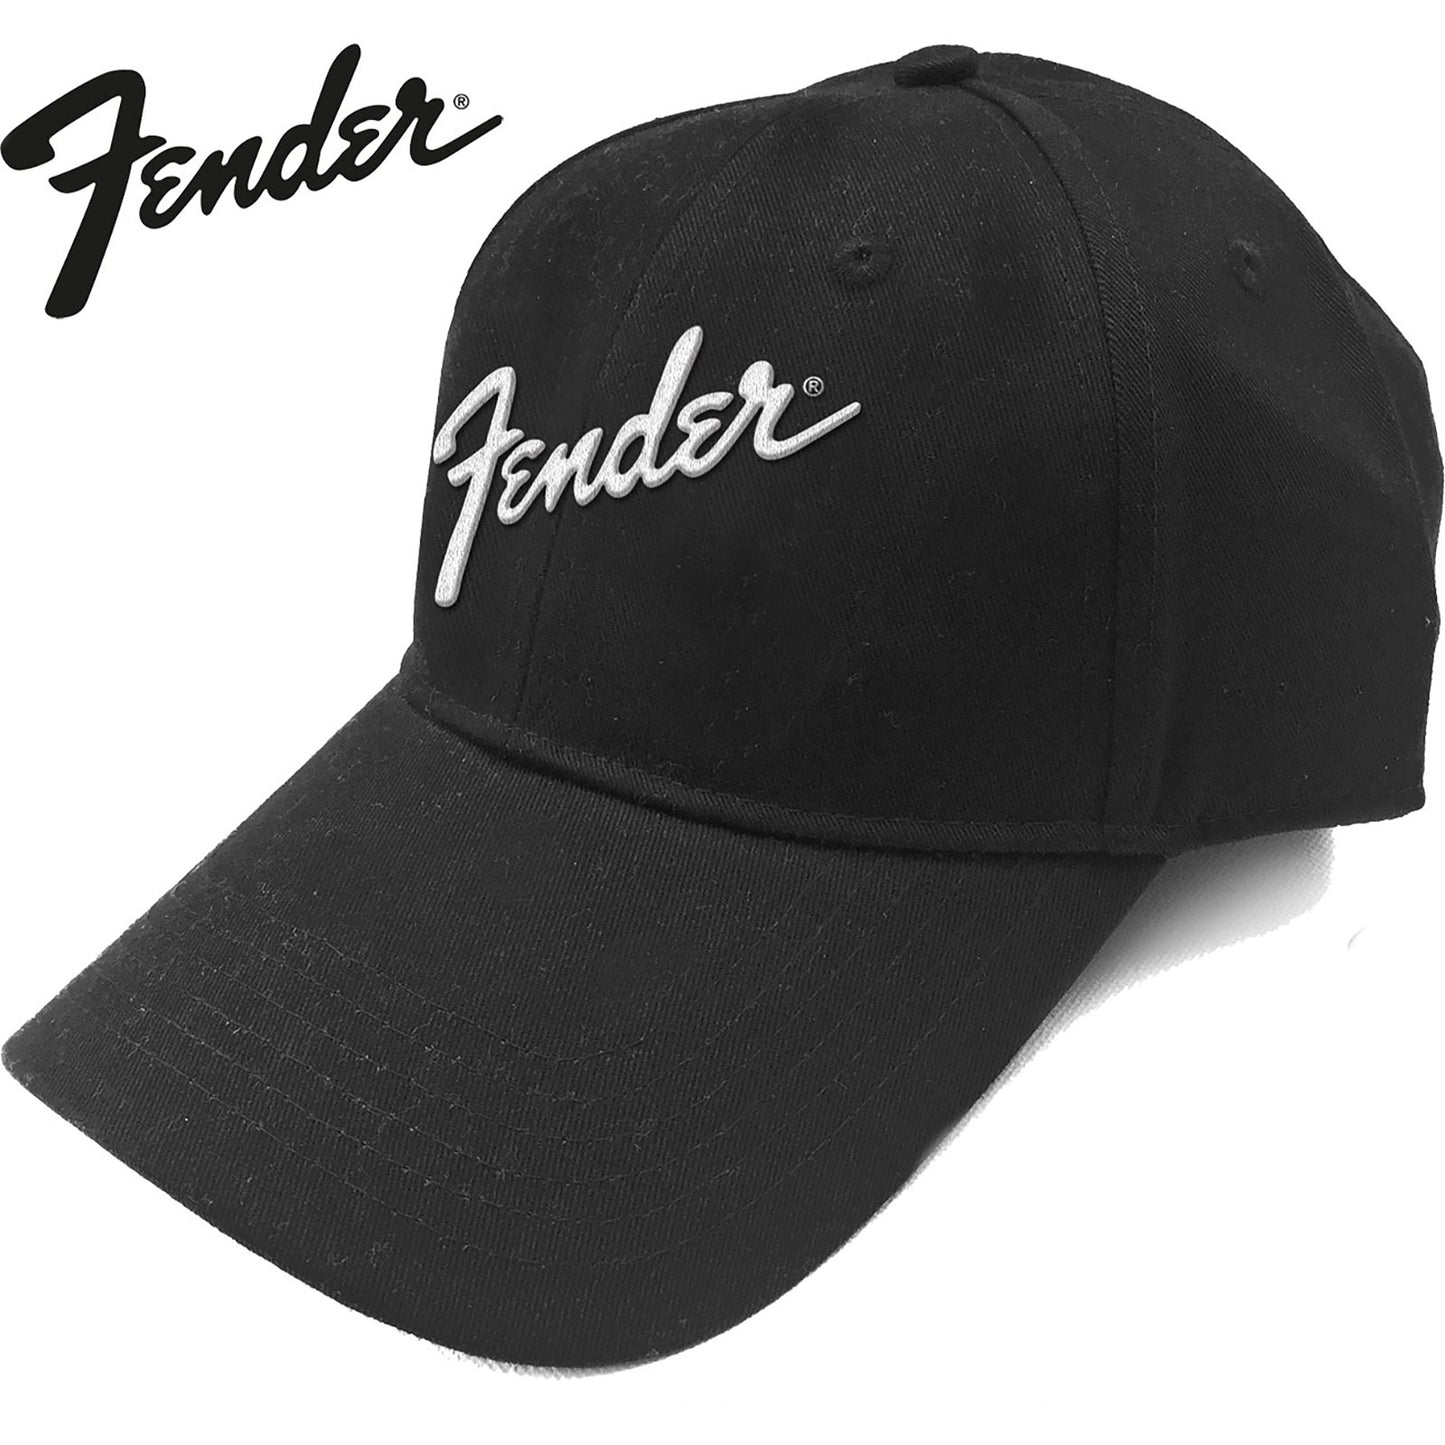 Fender Baseball Cap: Logo